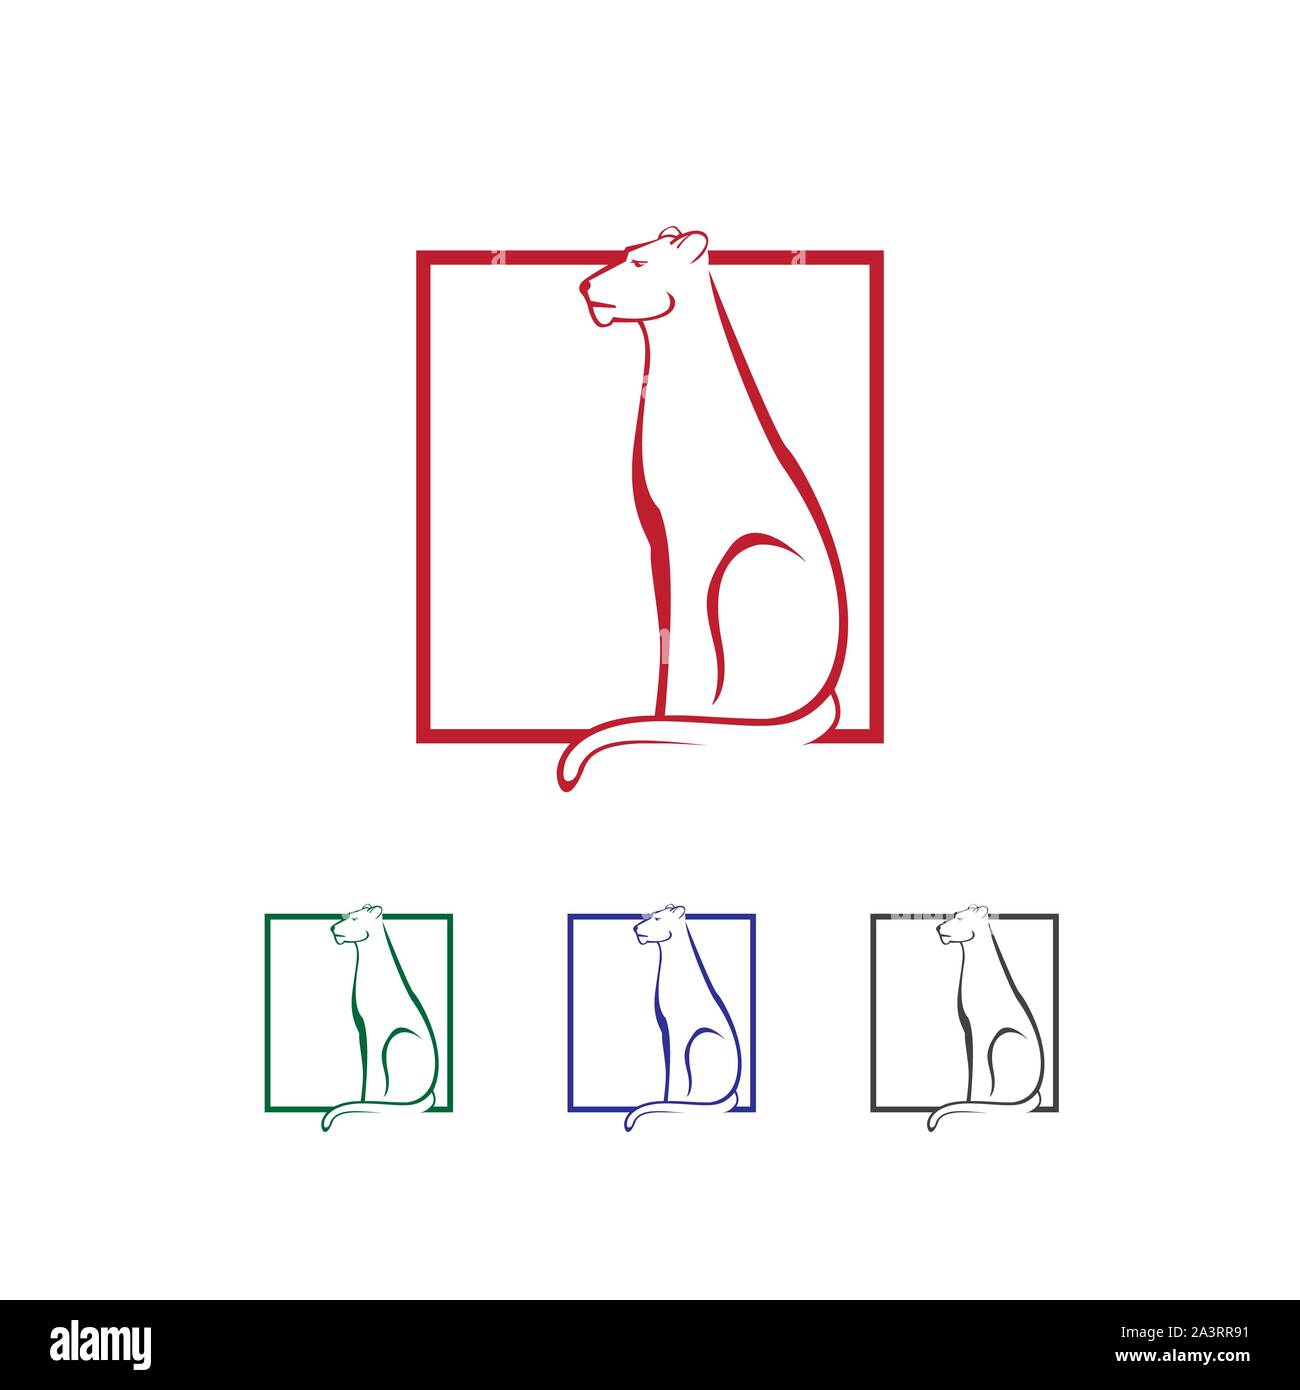 Popolare il gatto selvatico sulla linea di quadrati di leopard logo elemento di design template vettoriale Illustrazione Vettoriale